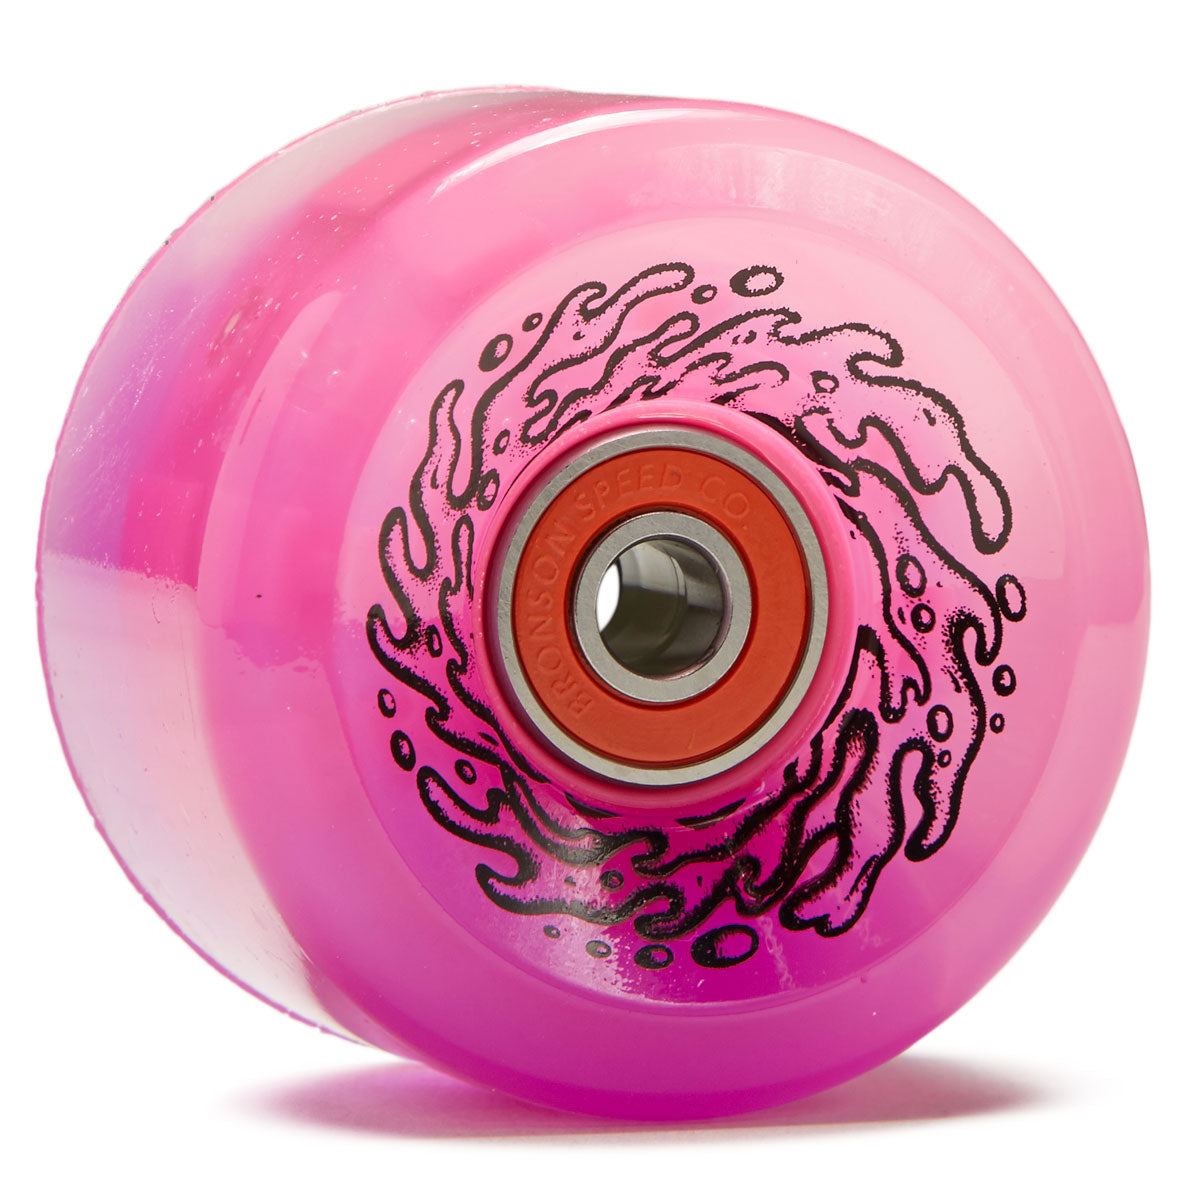 Slime Balls Light Ups OG Slime 78a Skateboard Wheels - Pink/Purple - 60mm image 1